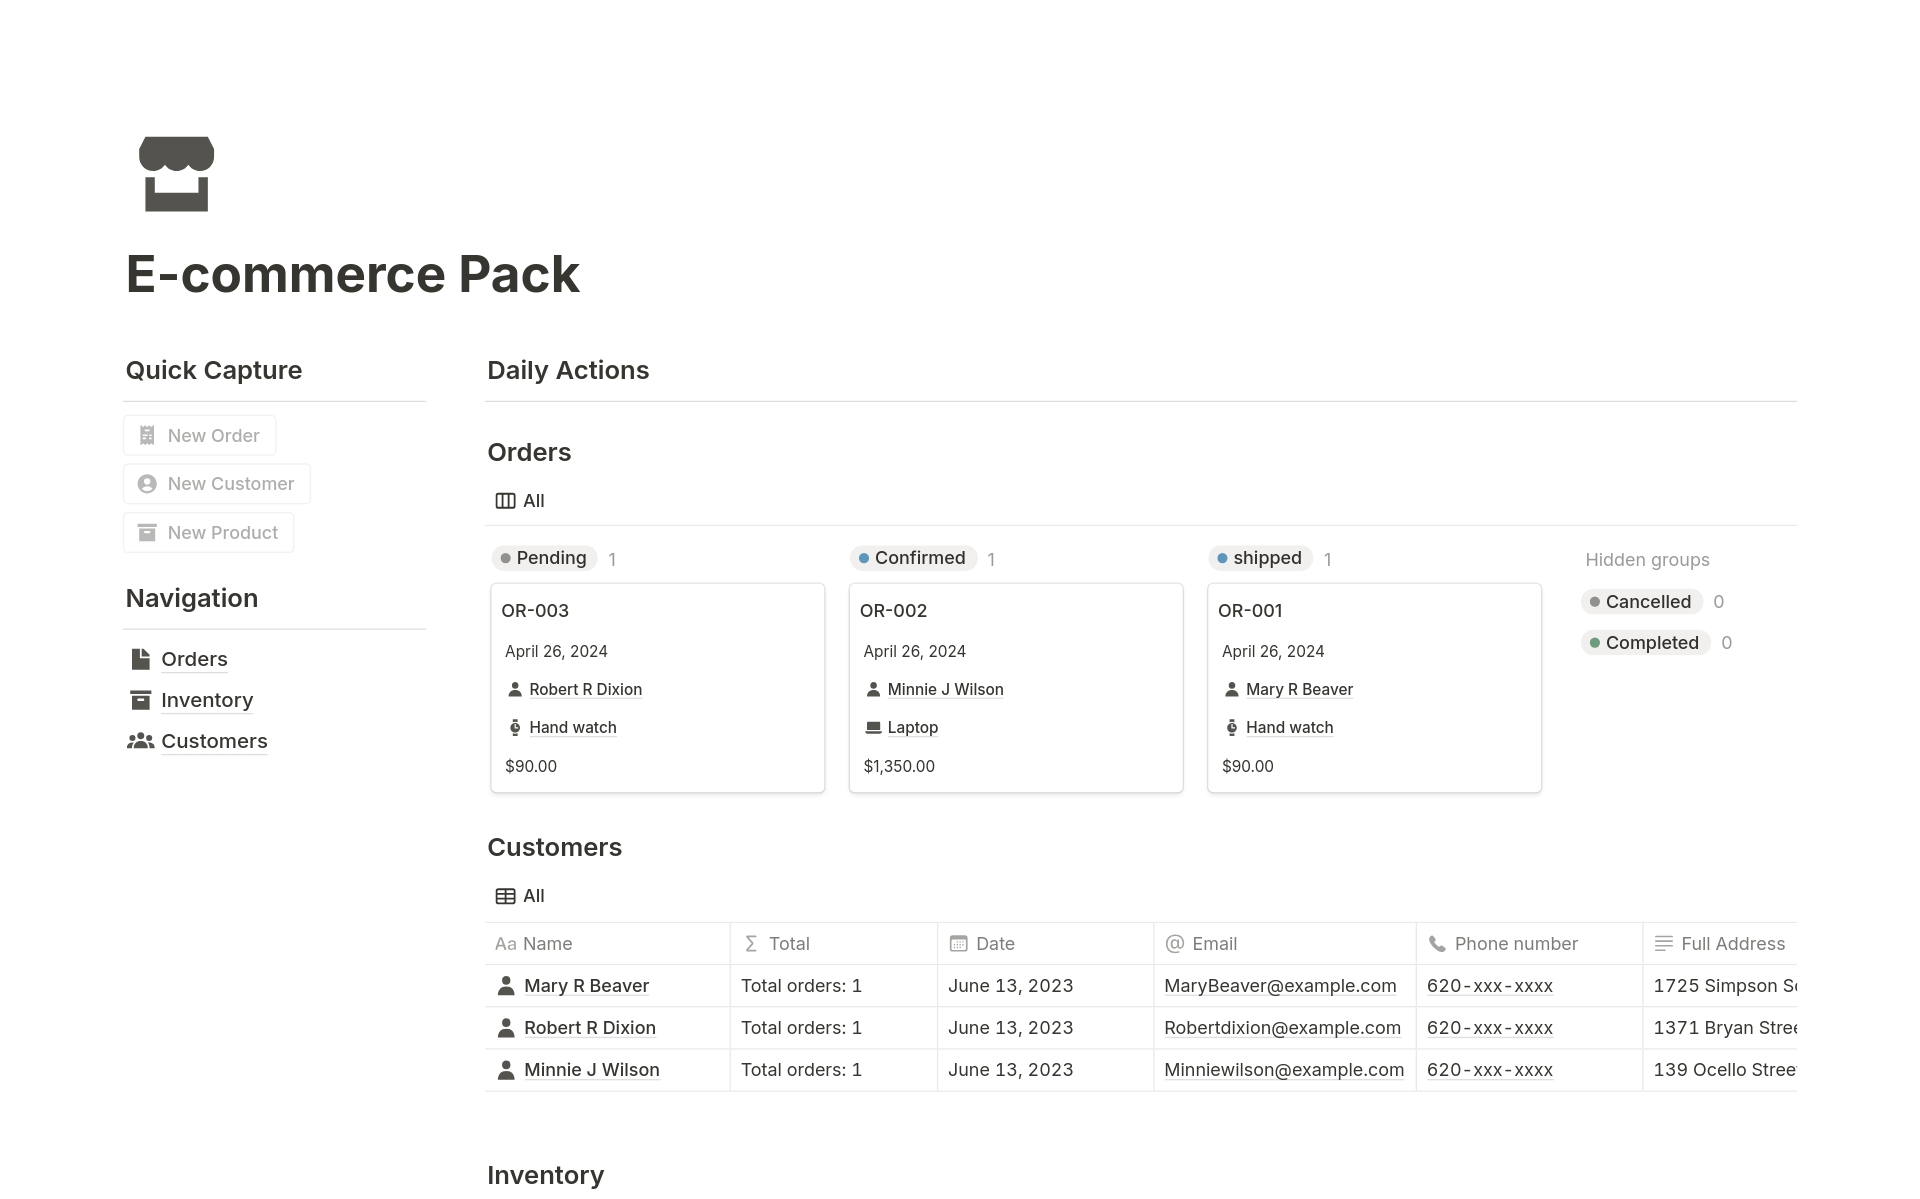 Vista previa de una plantilla para E-commerce Pack